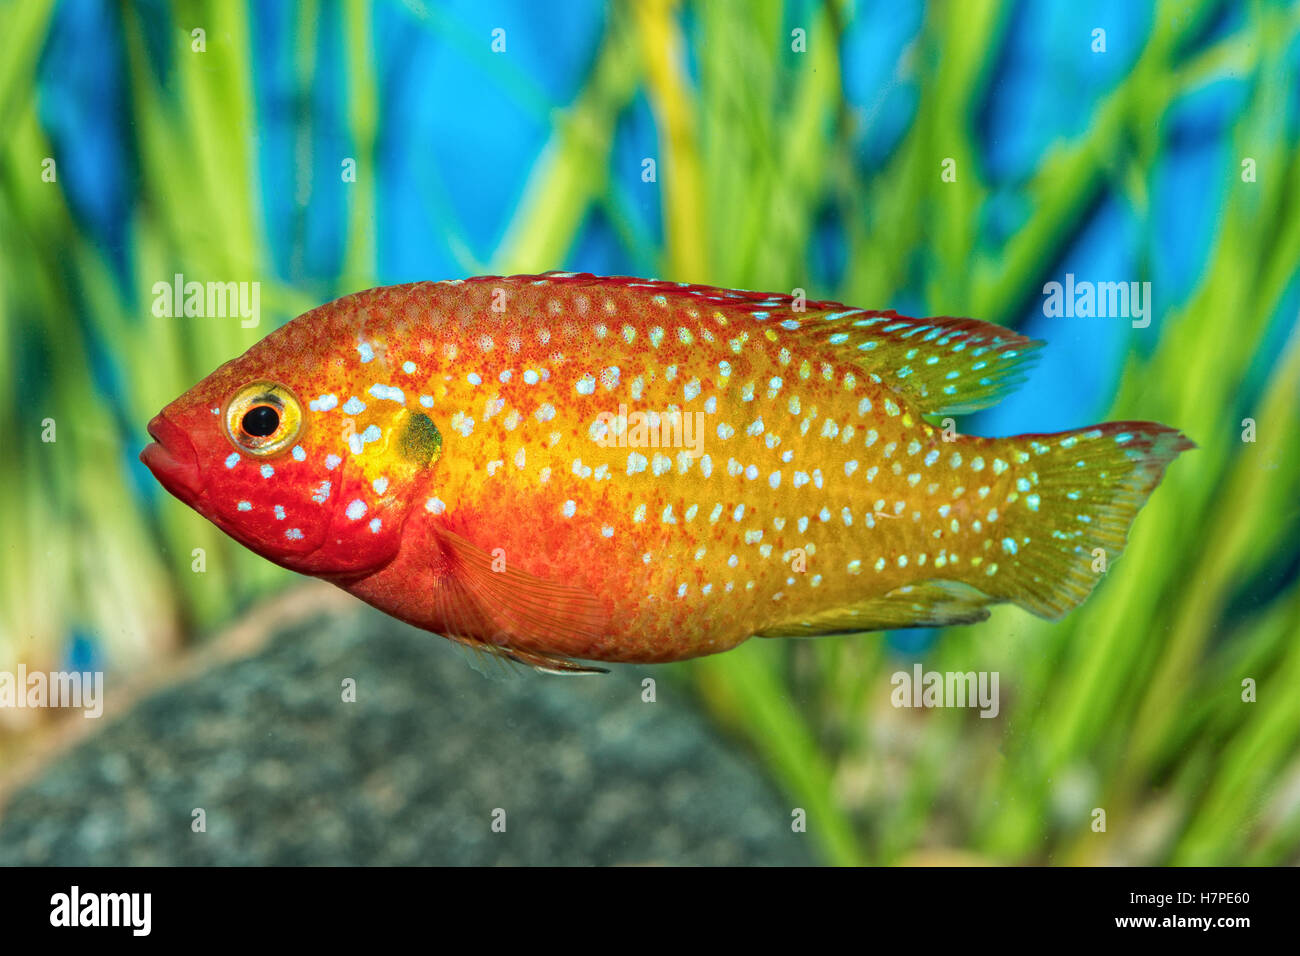 Portrait of freshwater cichlid fish (Hemichromis sp.) in aquarium Stock Photo